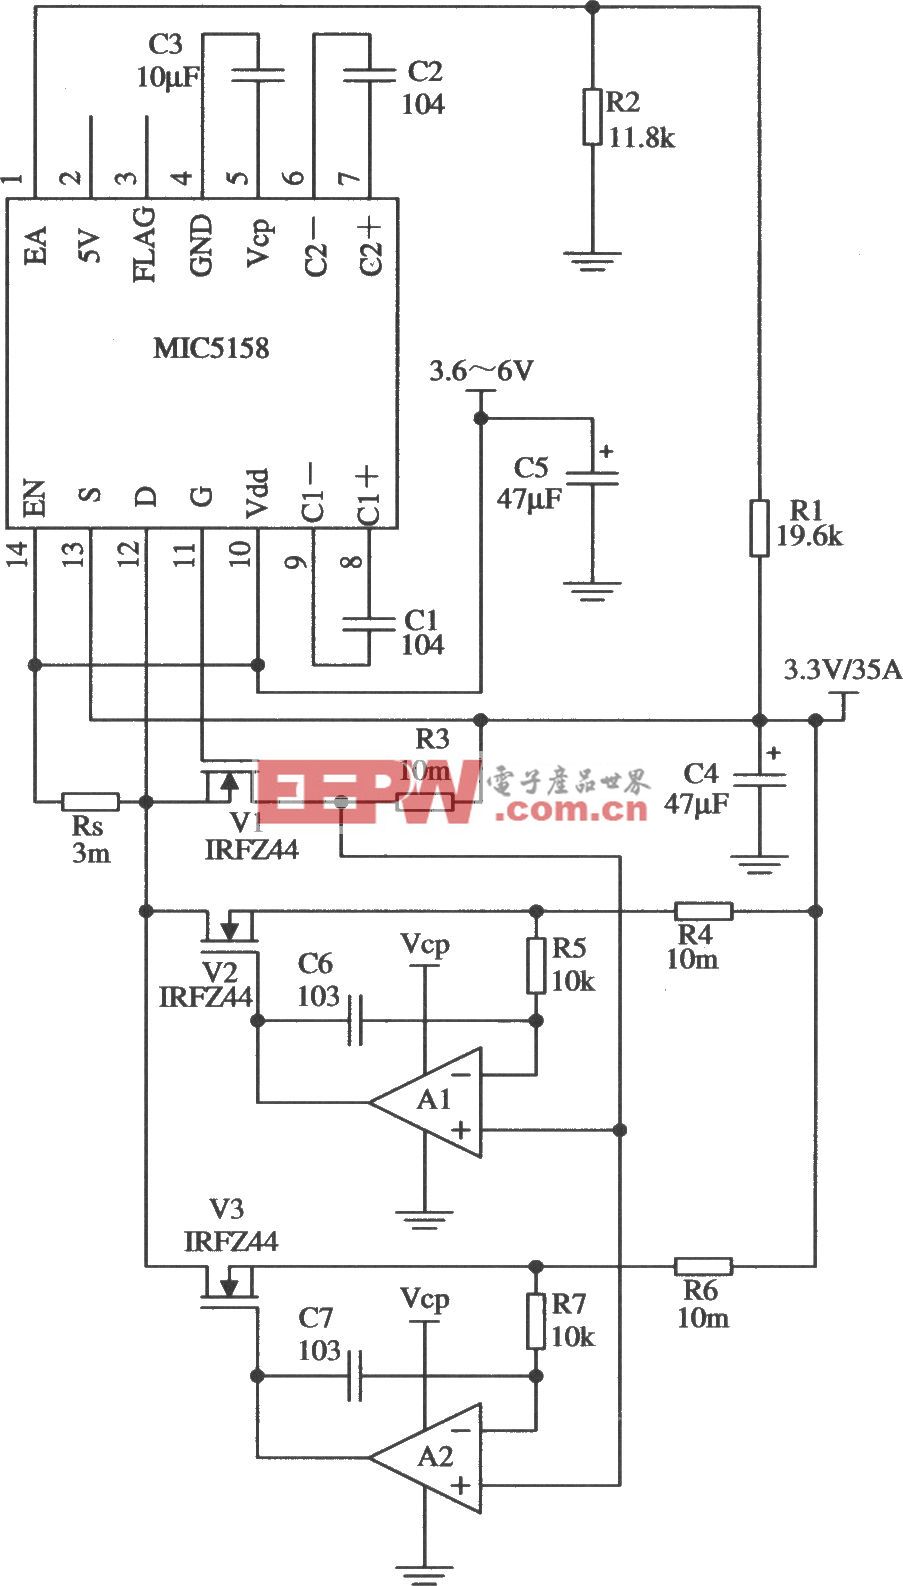 多个MOSFET管并联构成的大电流输出线性稳压器电路(MIC5158)